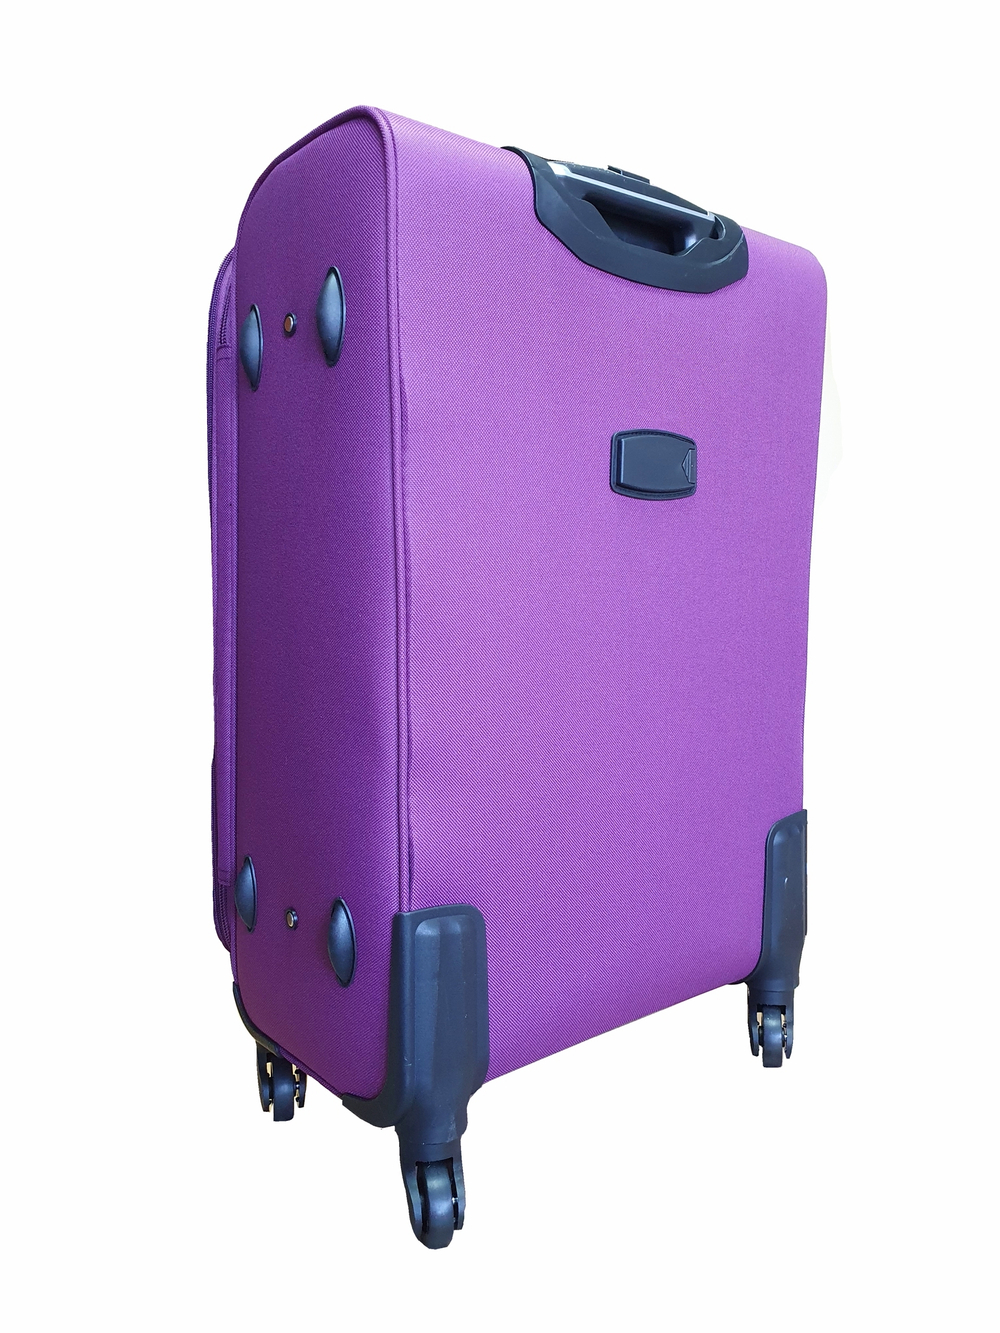 Чемодан на колесах тканевый L’case Barcelona размера XL (82х54х33 (+5) см), объем 138 литров, вес 4.5 кг, Фиолетовый